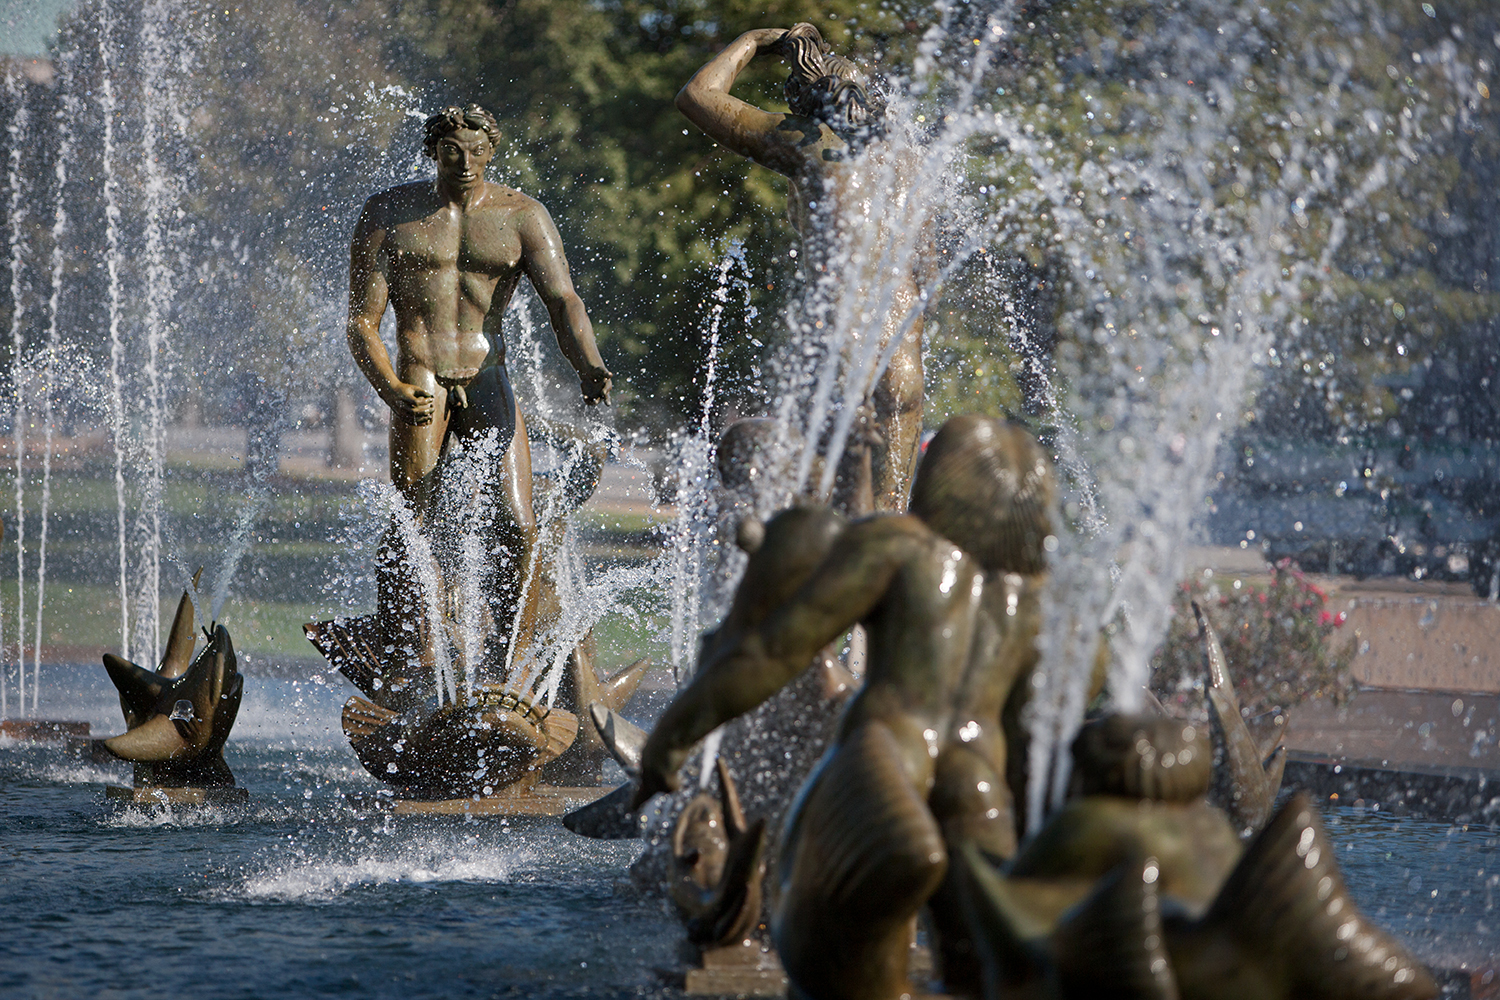 Milles Fountain / St. Louis MO / Carl Milles / 1939